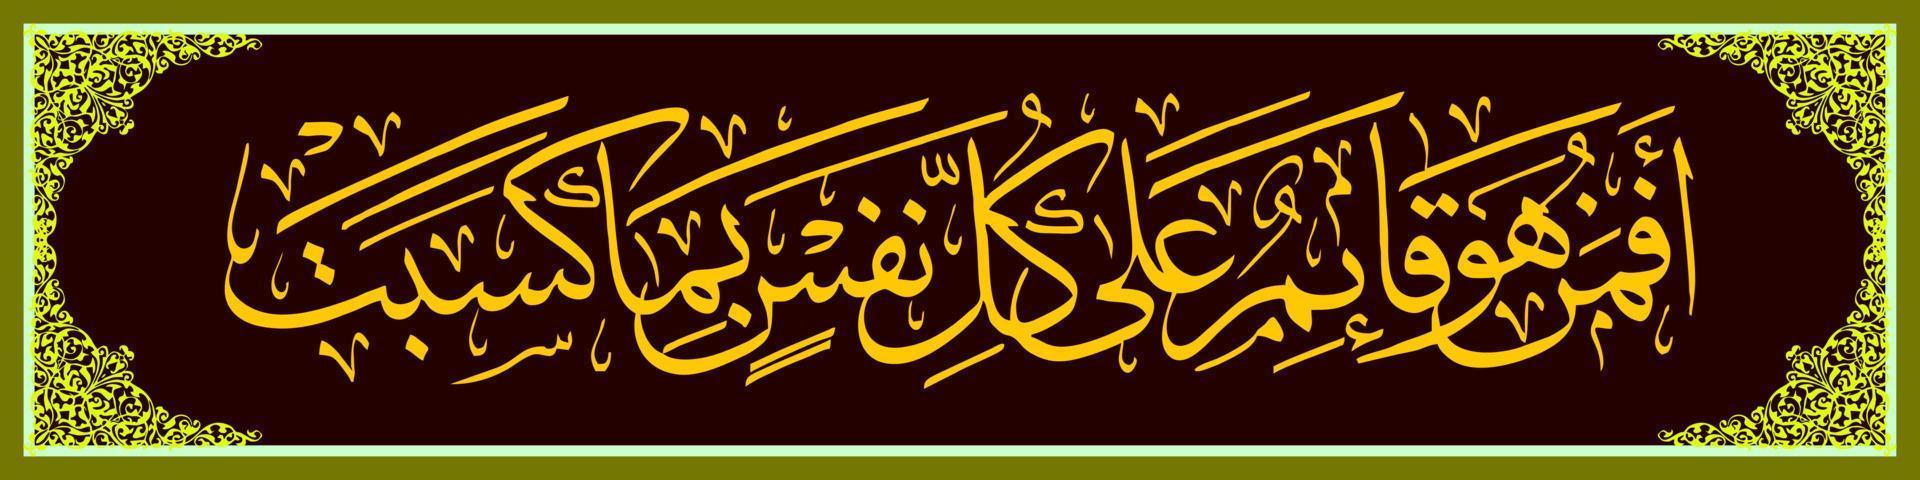 calligraphie arabe, al qur'an sourate ar ra'd 33, traduisez alors est-ce dieu qui protège chaque âme contre ce qu'elle fait de même que les autres ils font des partenaires des partenaires pour allah. . vecteur